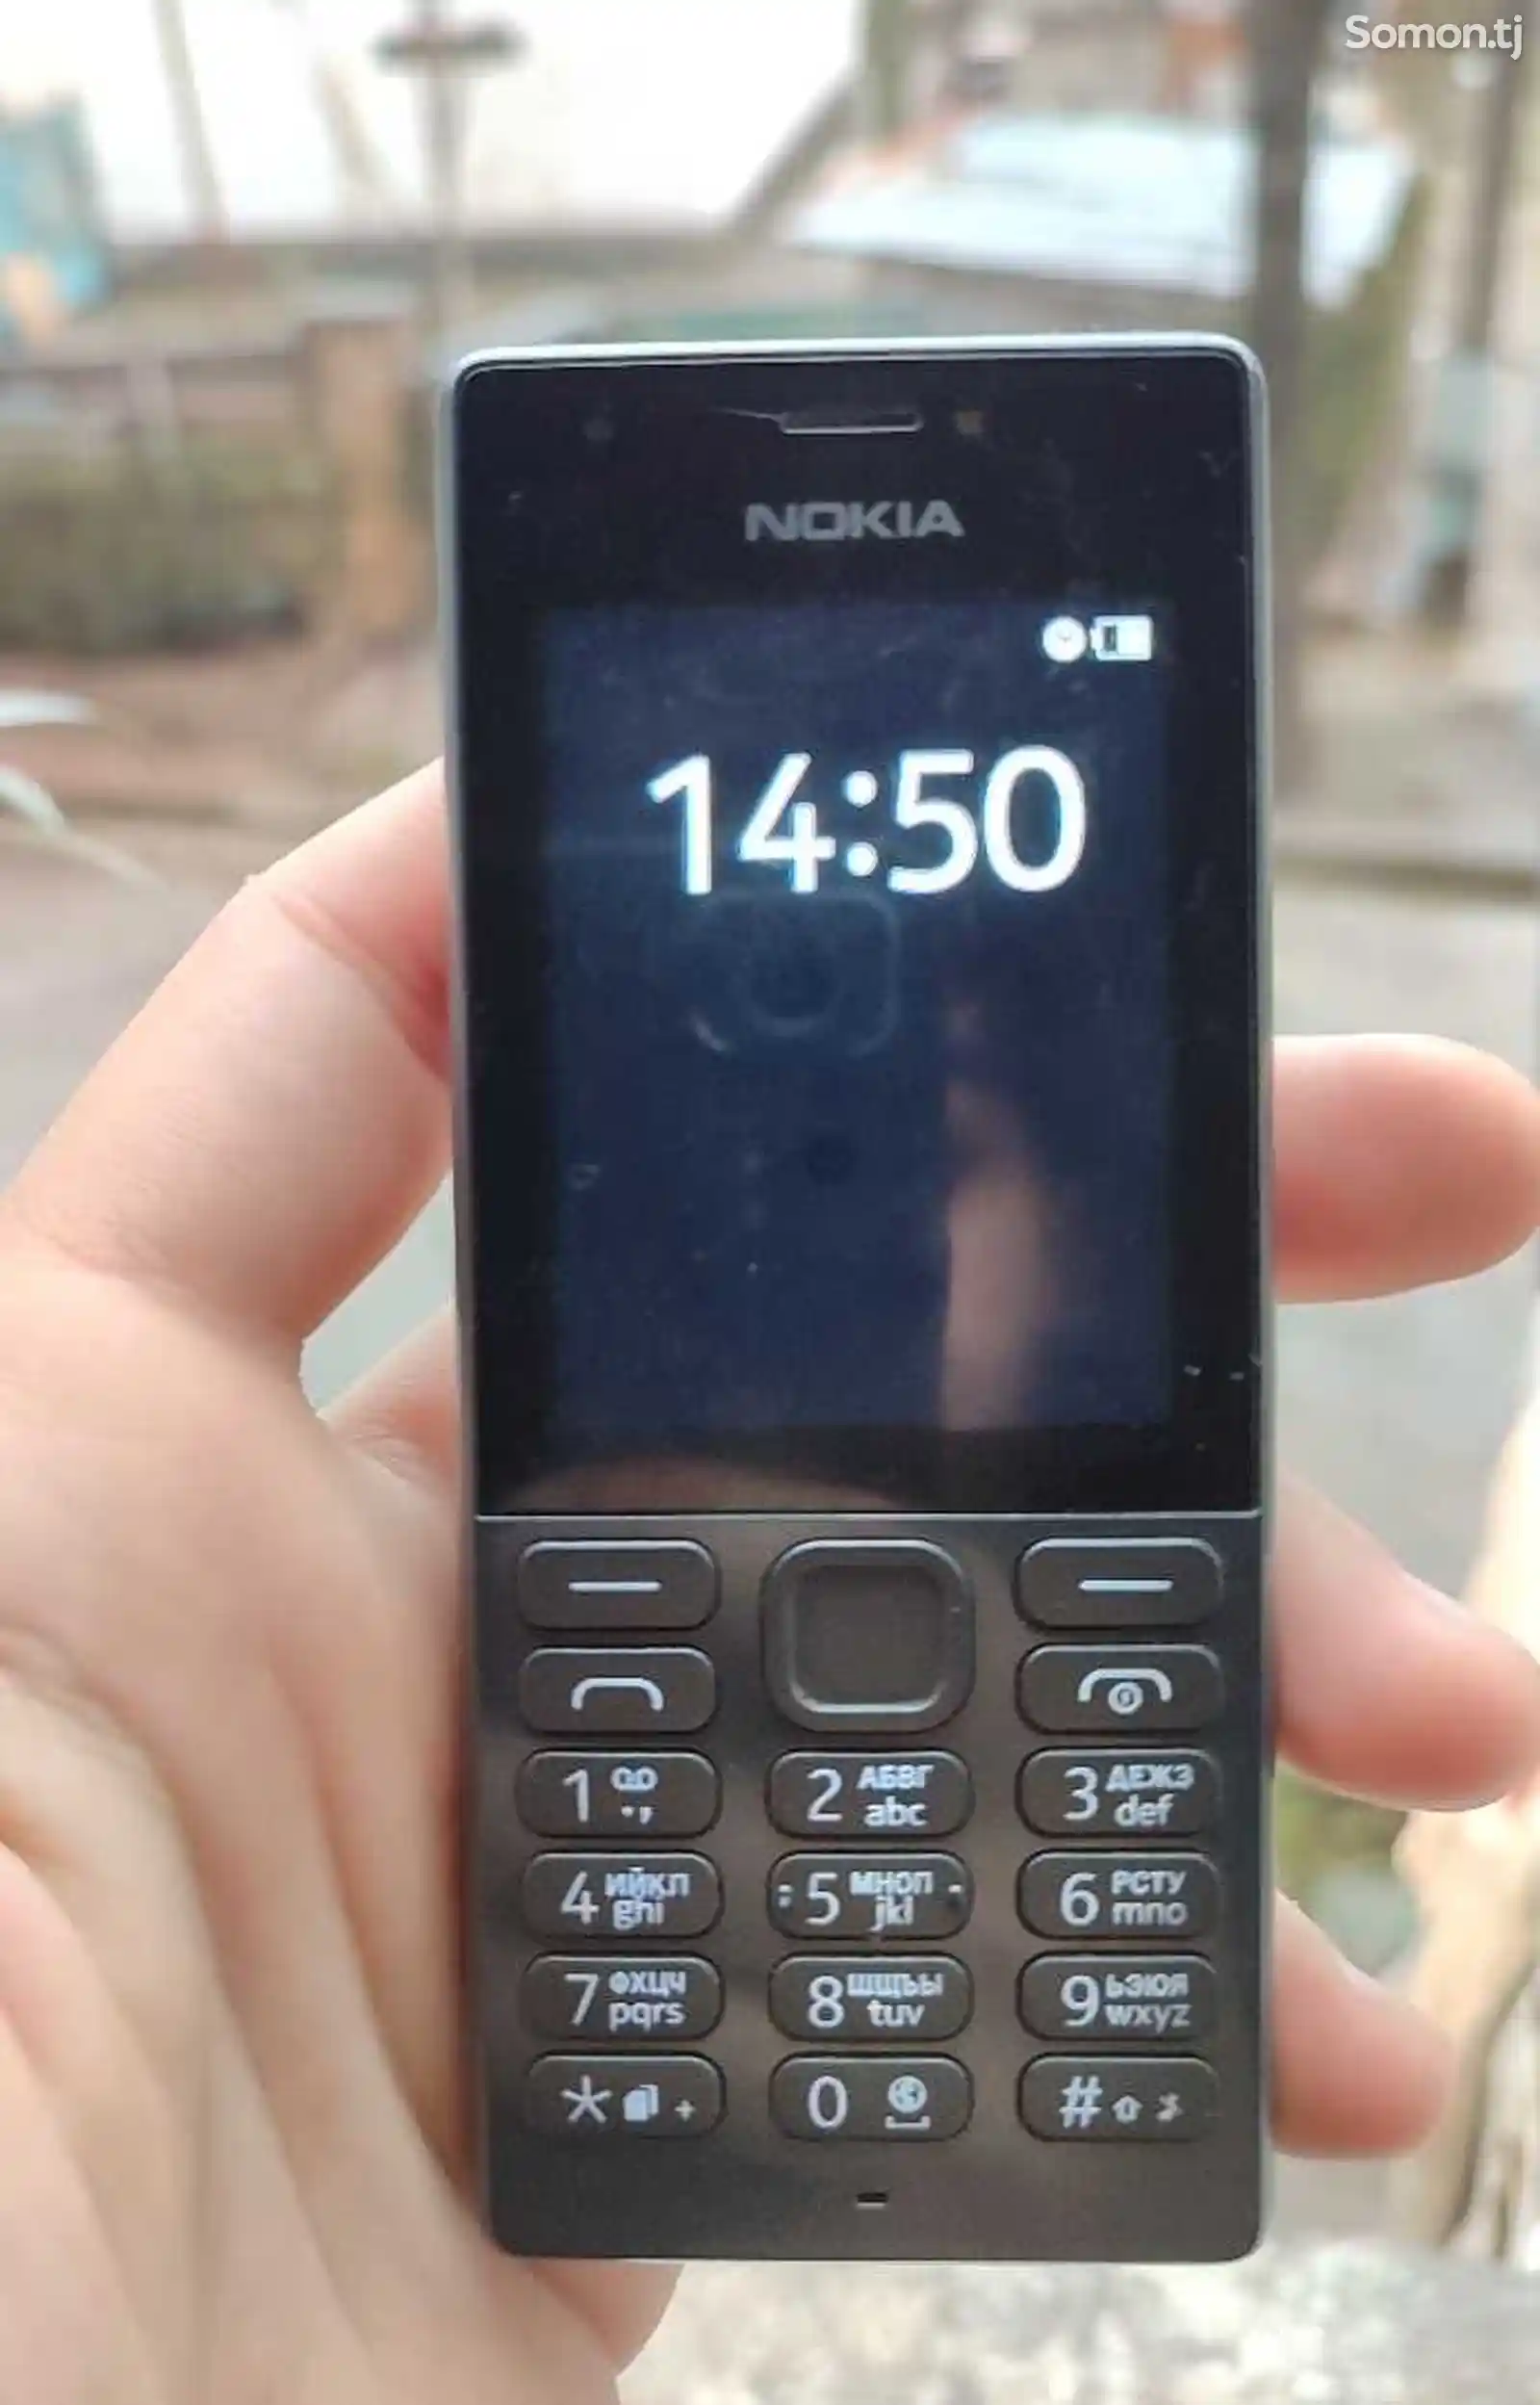 Nokia 216-1